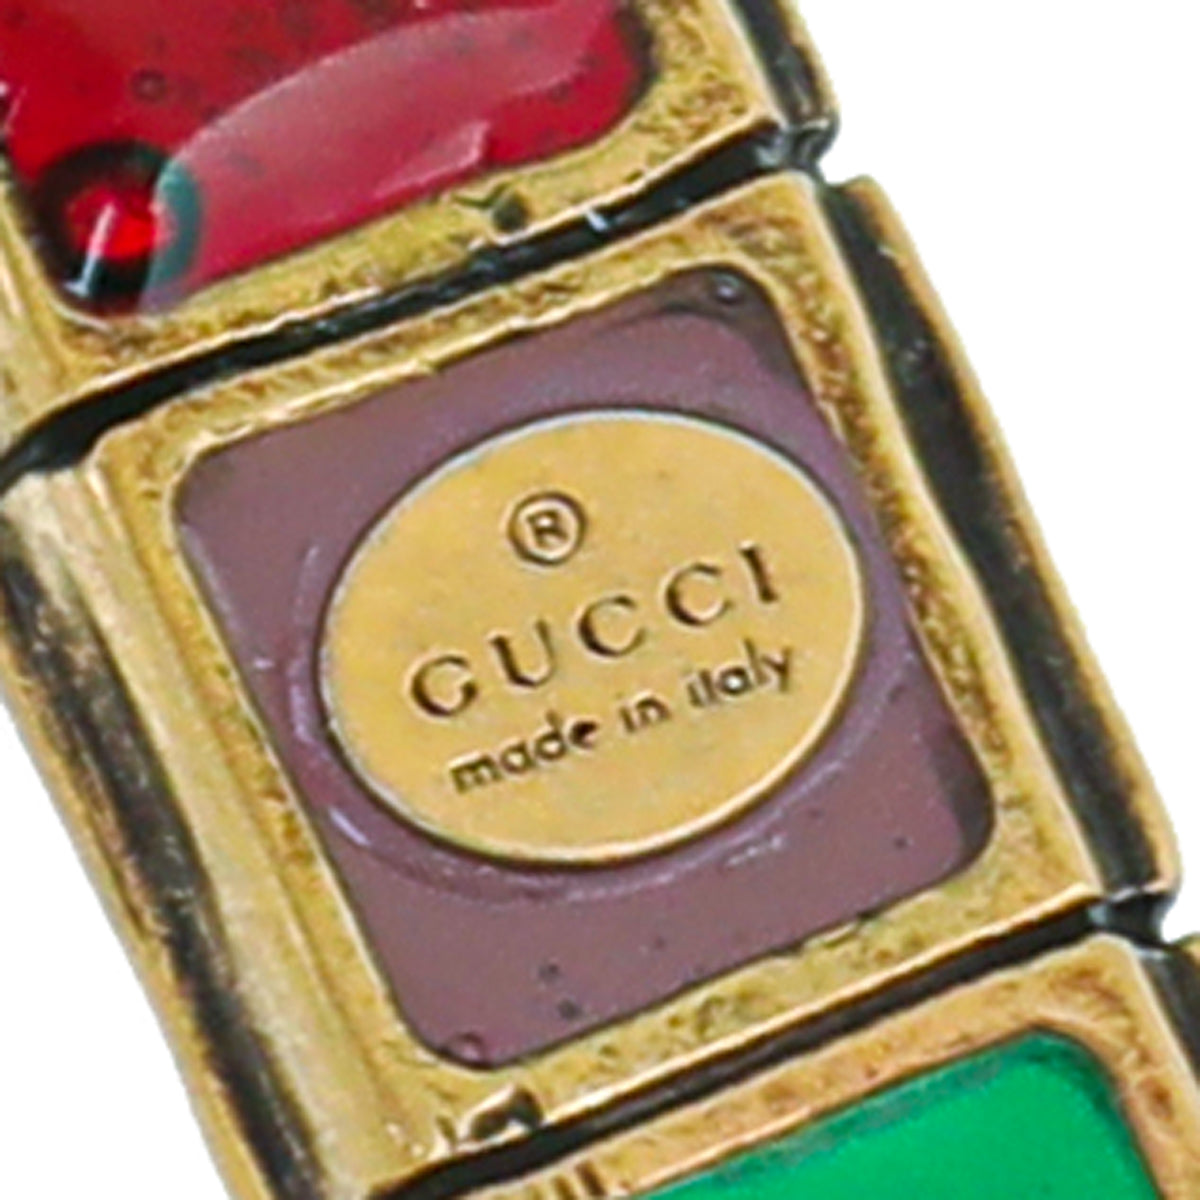 Gucci Multicolor Resin Gripoix Cross Small Pendant Necklace